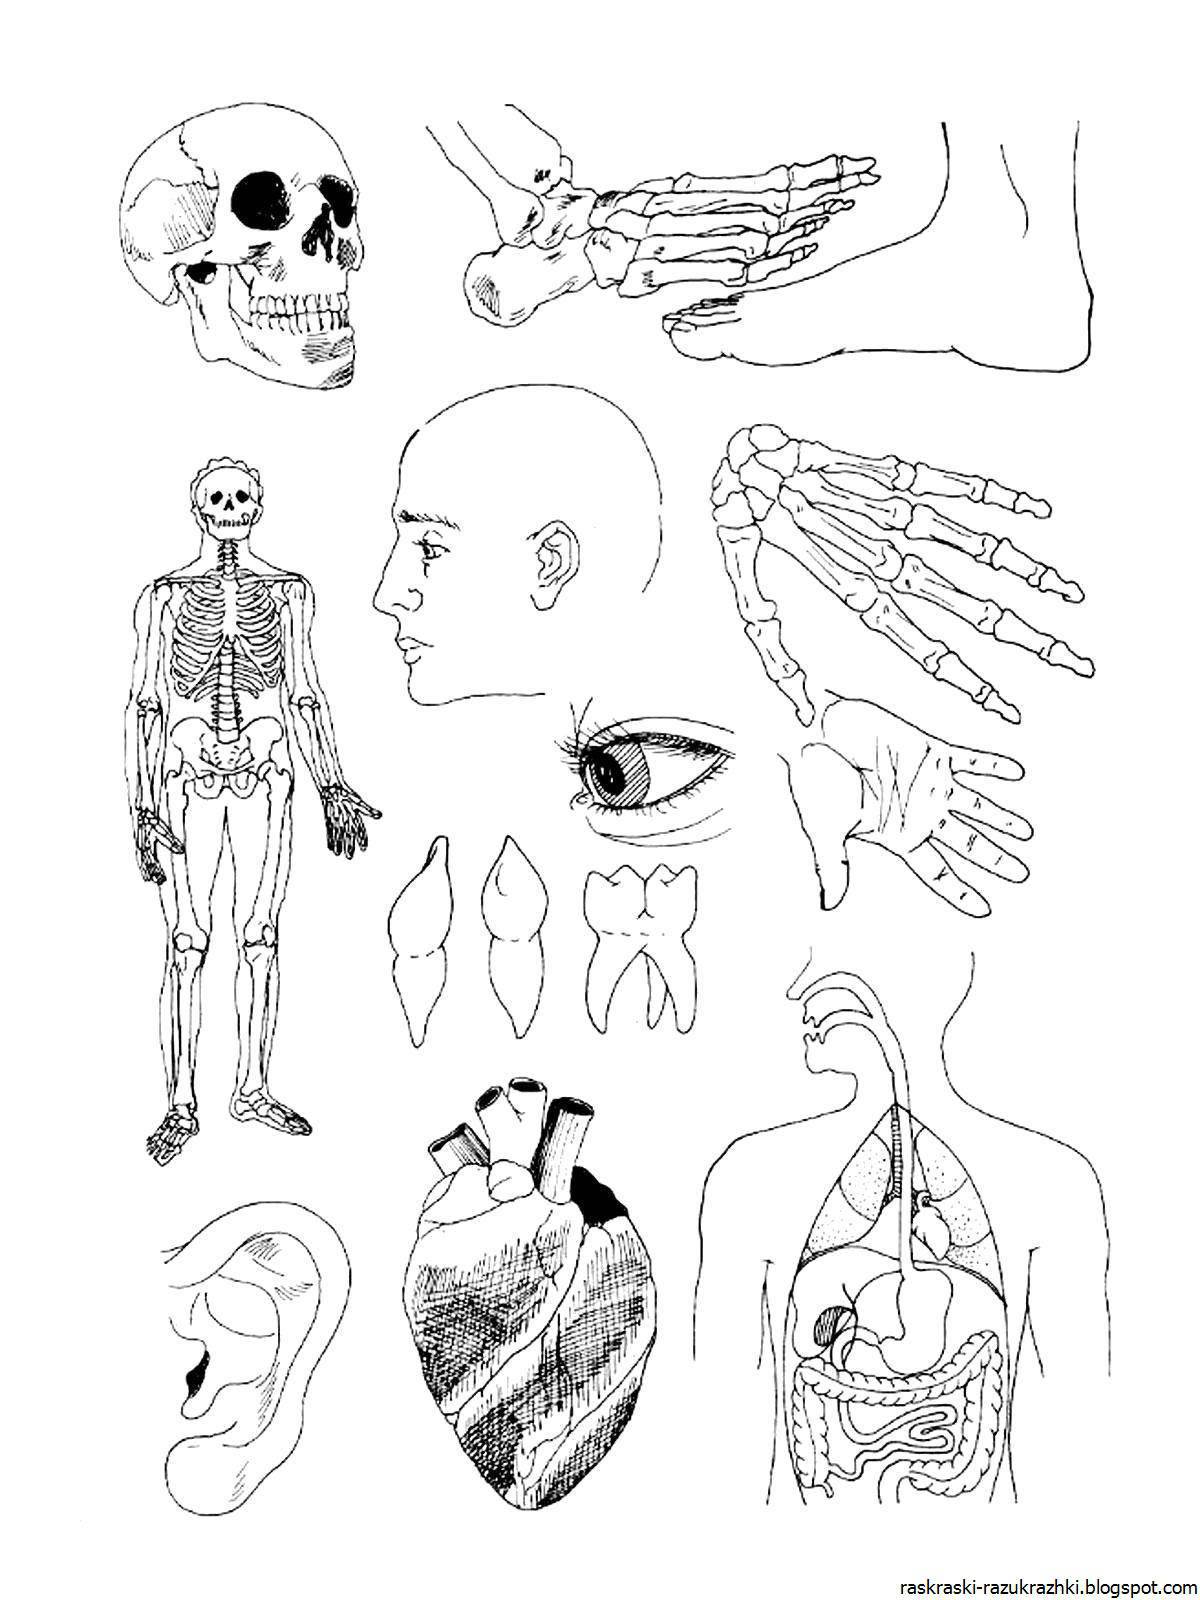 Charming human organs coloring book